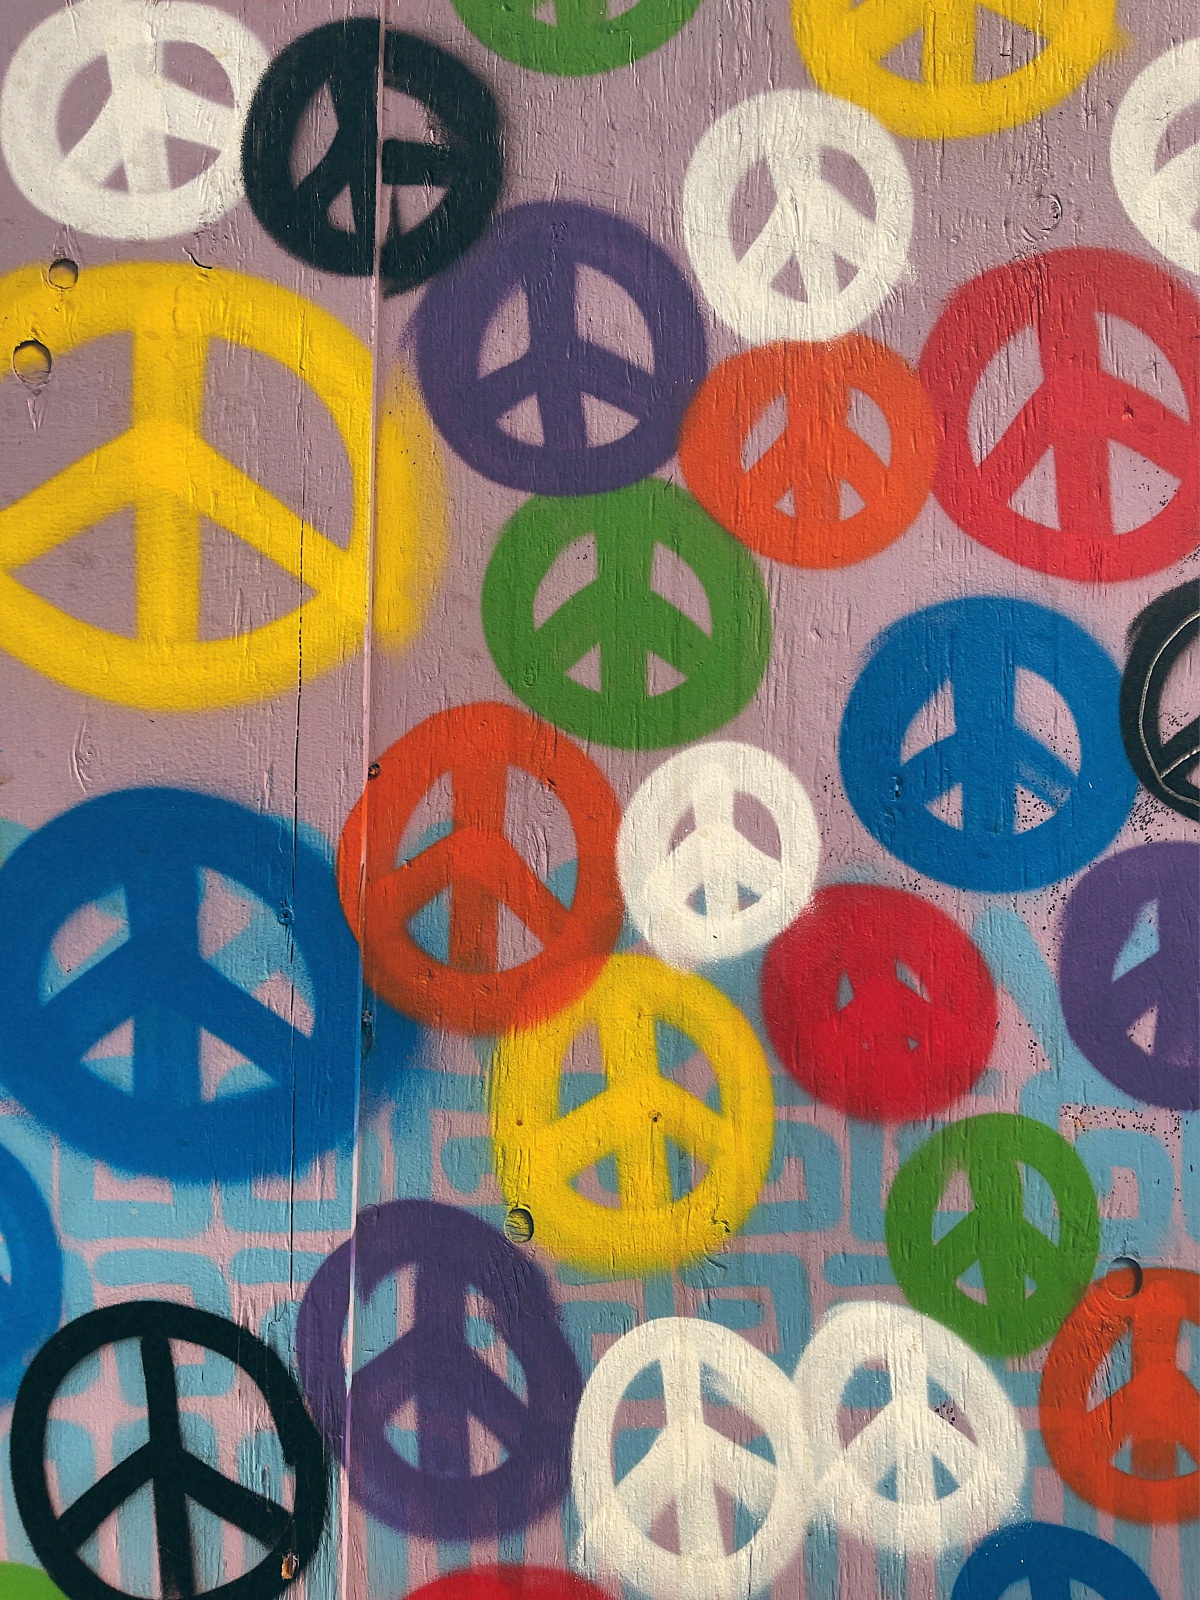 peace symbol graffiti